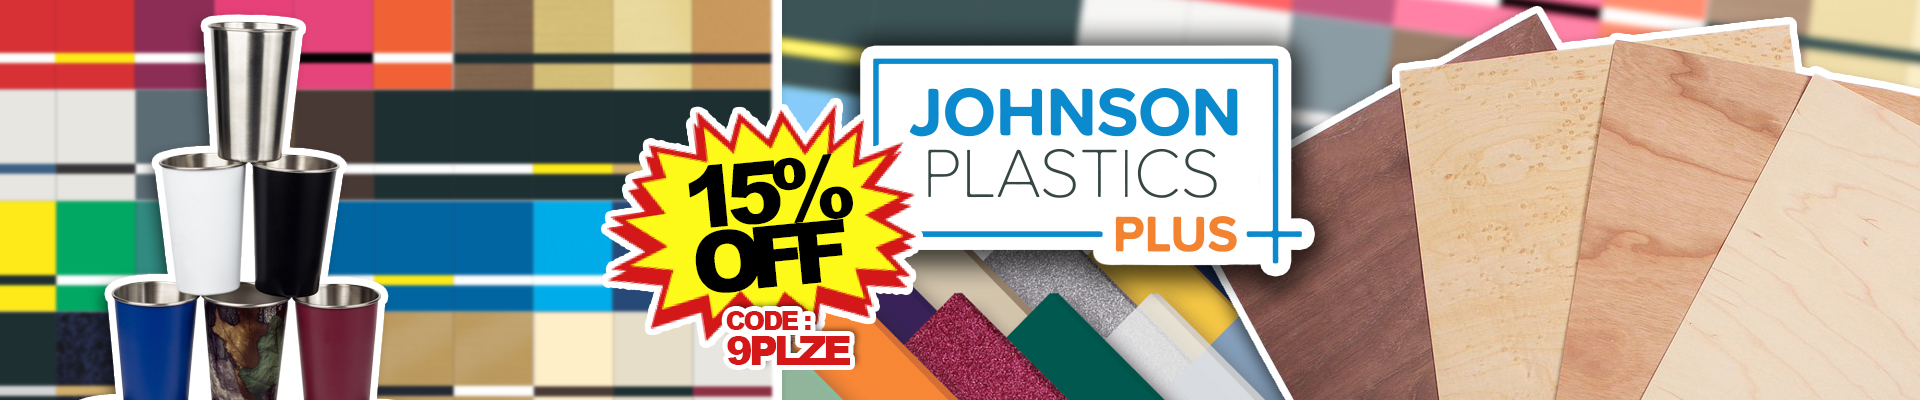 Johnson Plastics Plus - Use our code 9PLZE for 15% off!